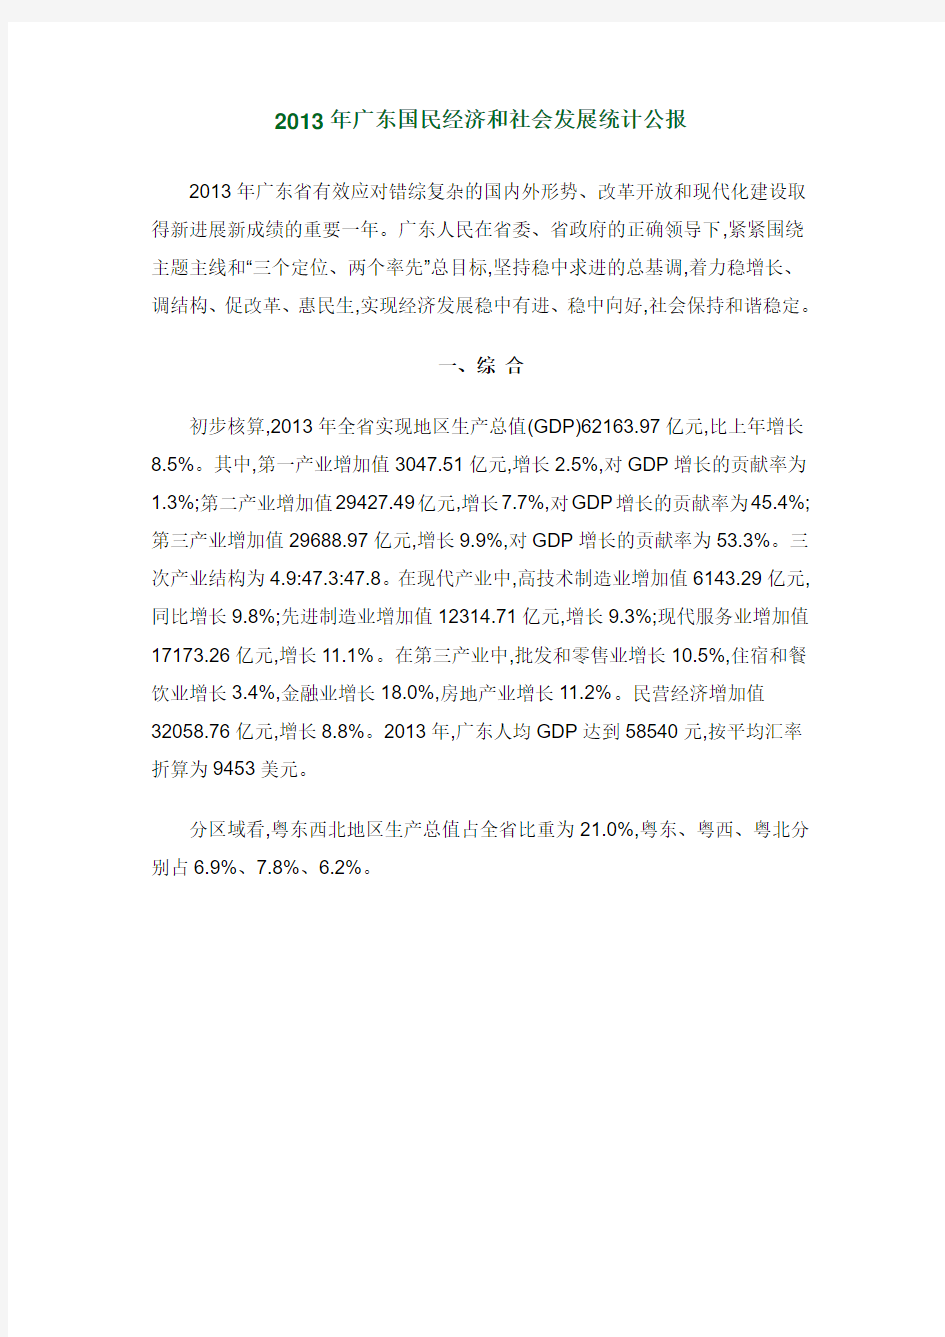 2013年广东国民经济和社会发展统计公报